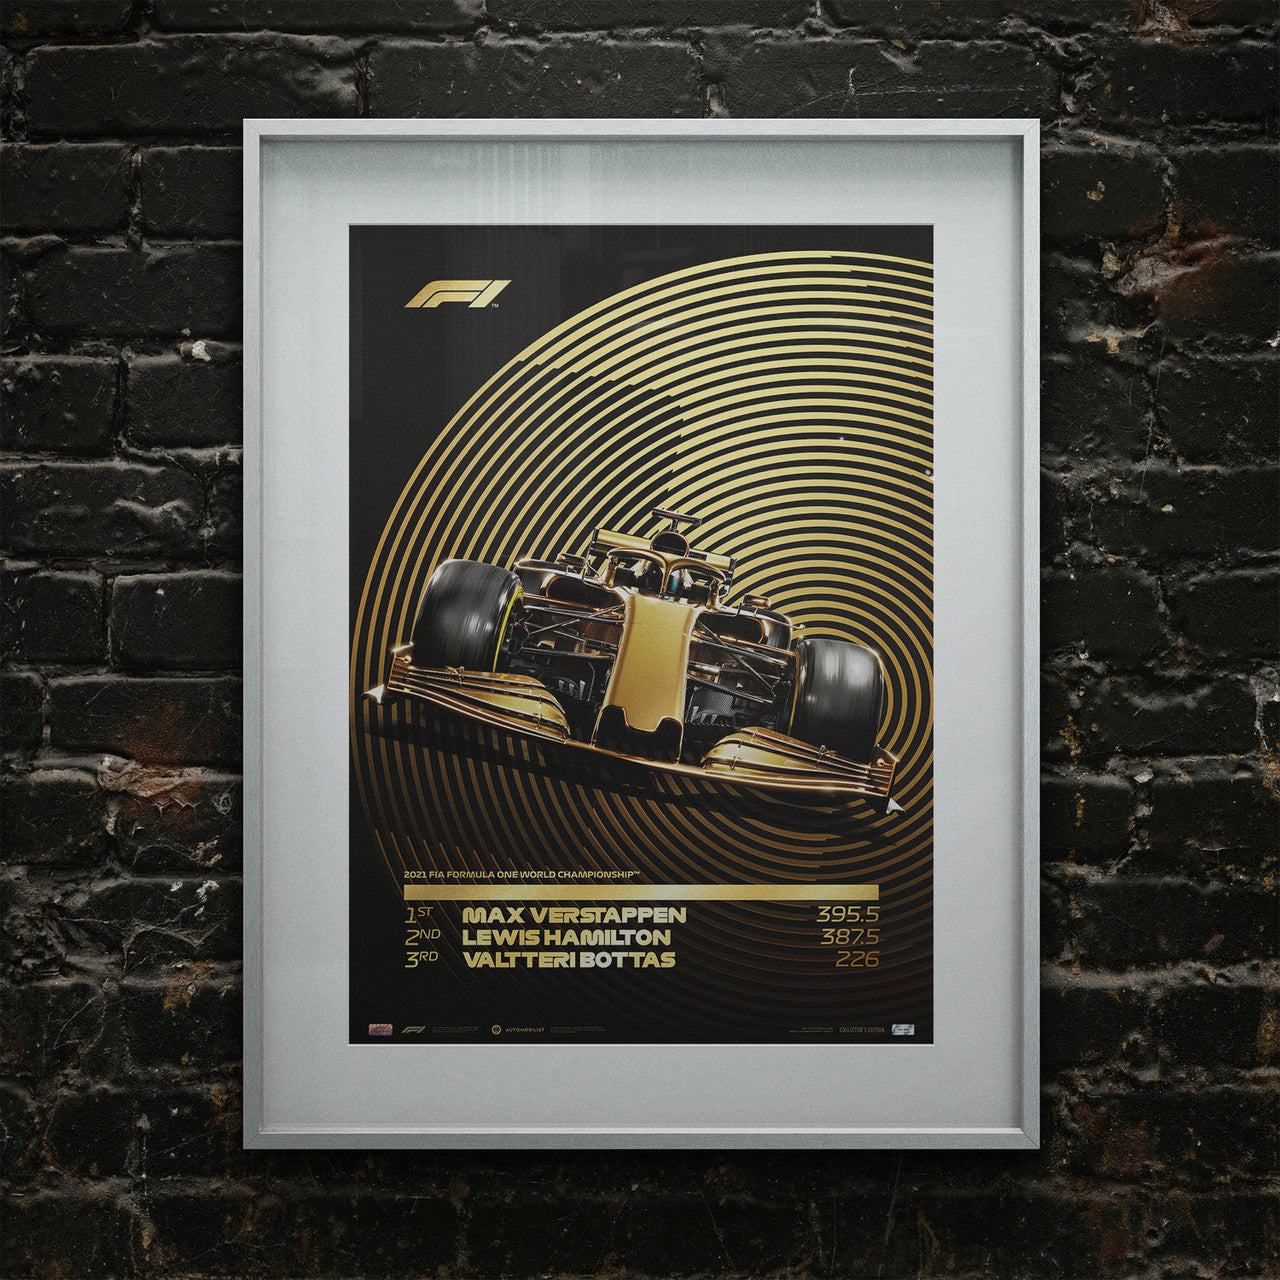 2021 FIA Formula 1® World Championship | Collector’s Edition